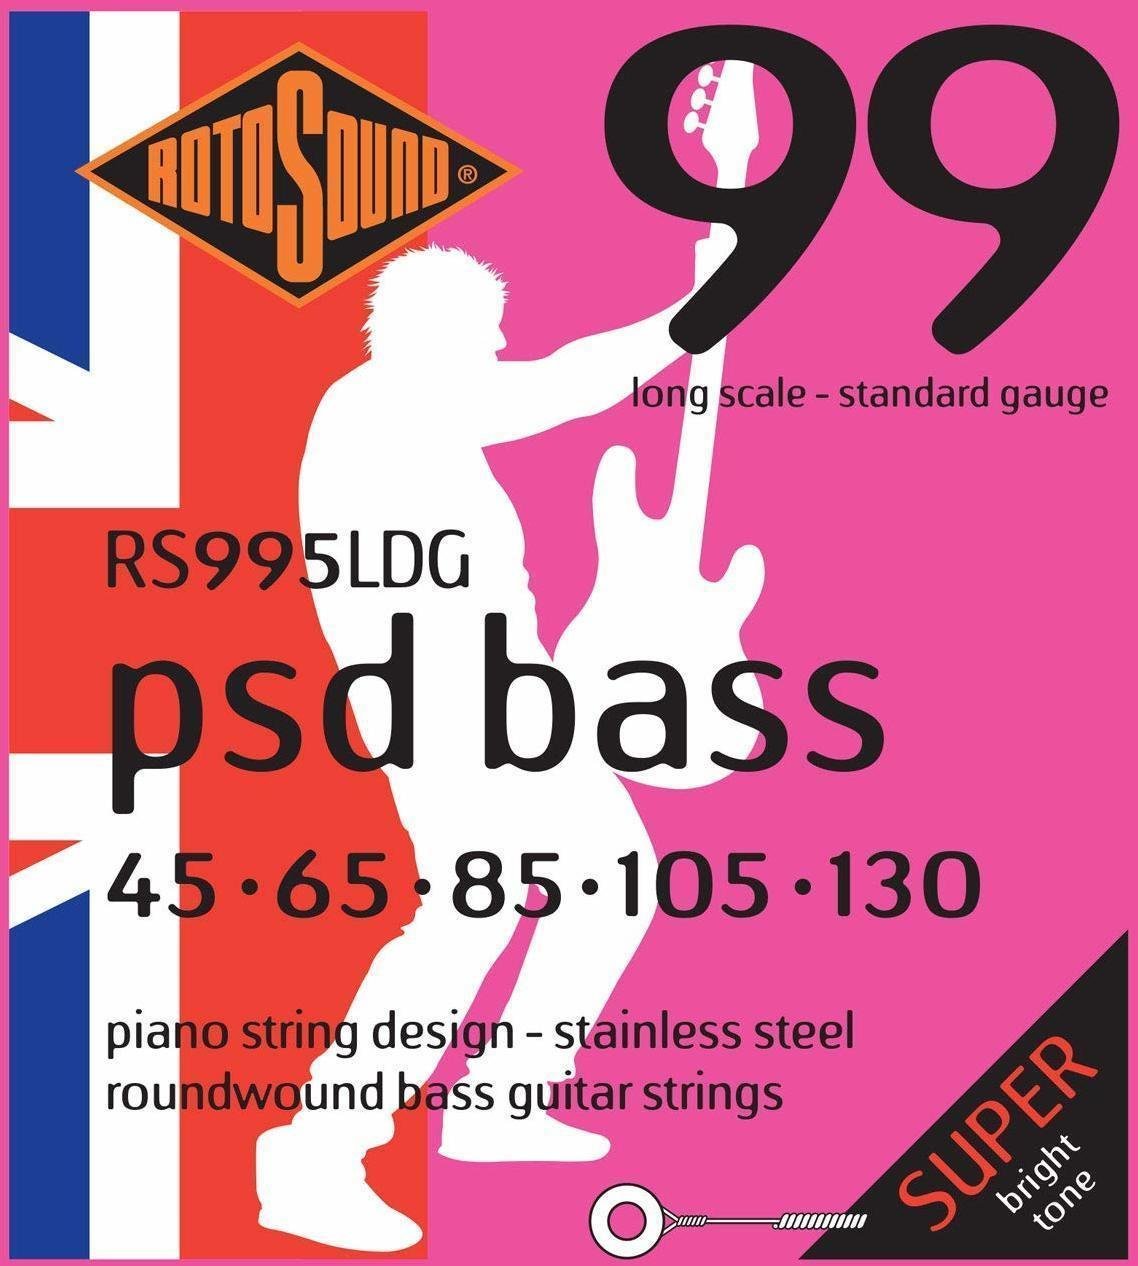 Struny pro 5-strunnou baskytaru Rotosound RS 995 LDG